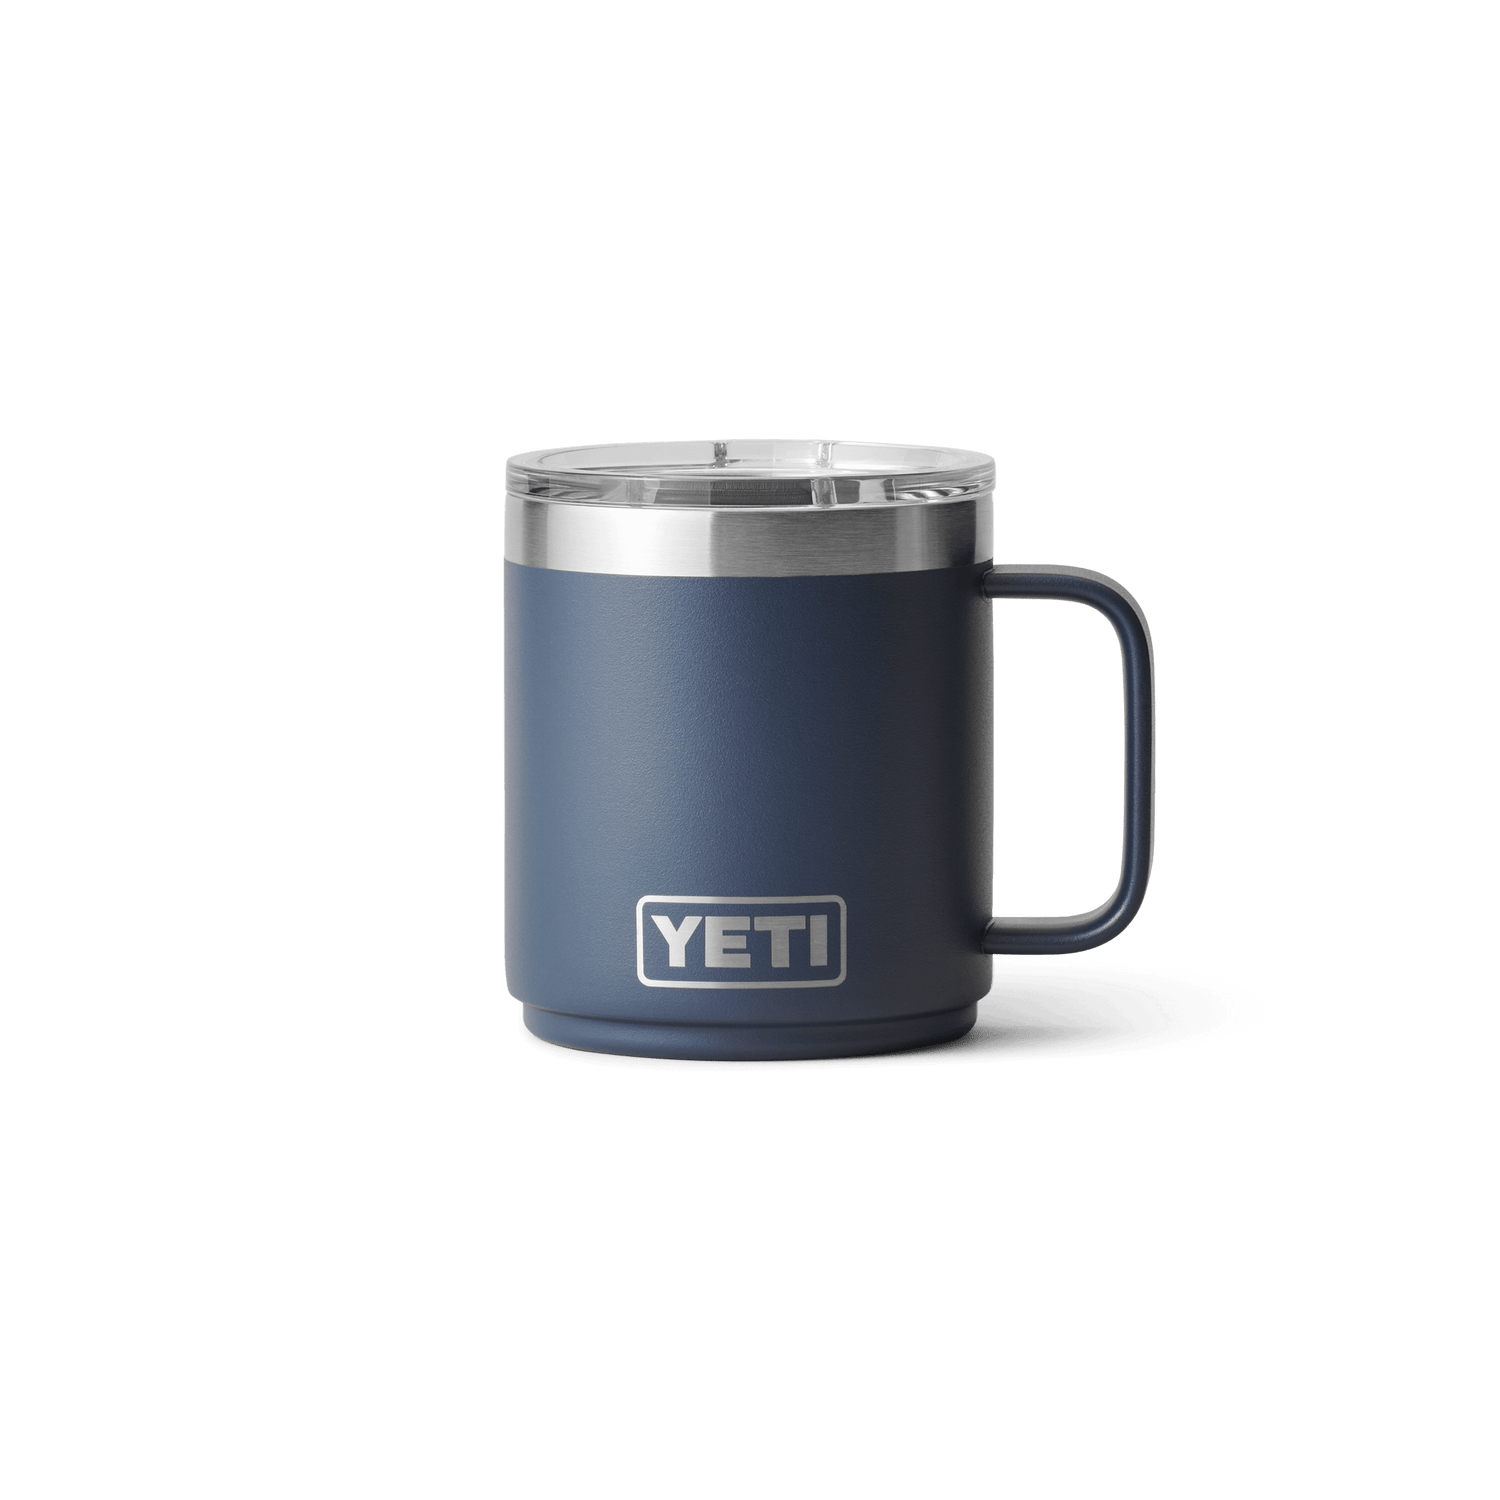 Für Yeti Rambler Becher Wasser becher magnetische Attraktion Tasse